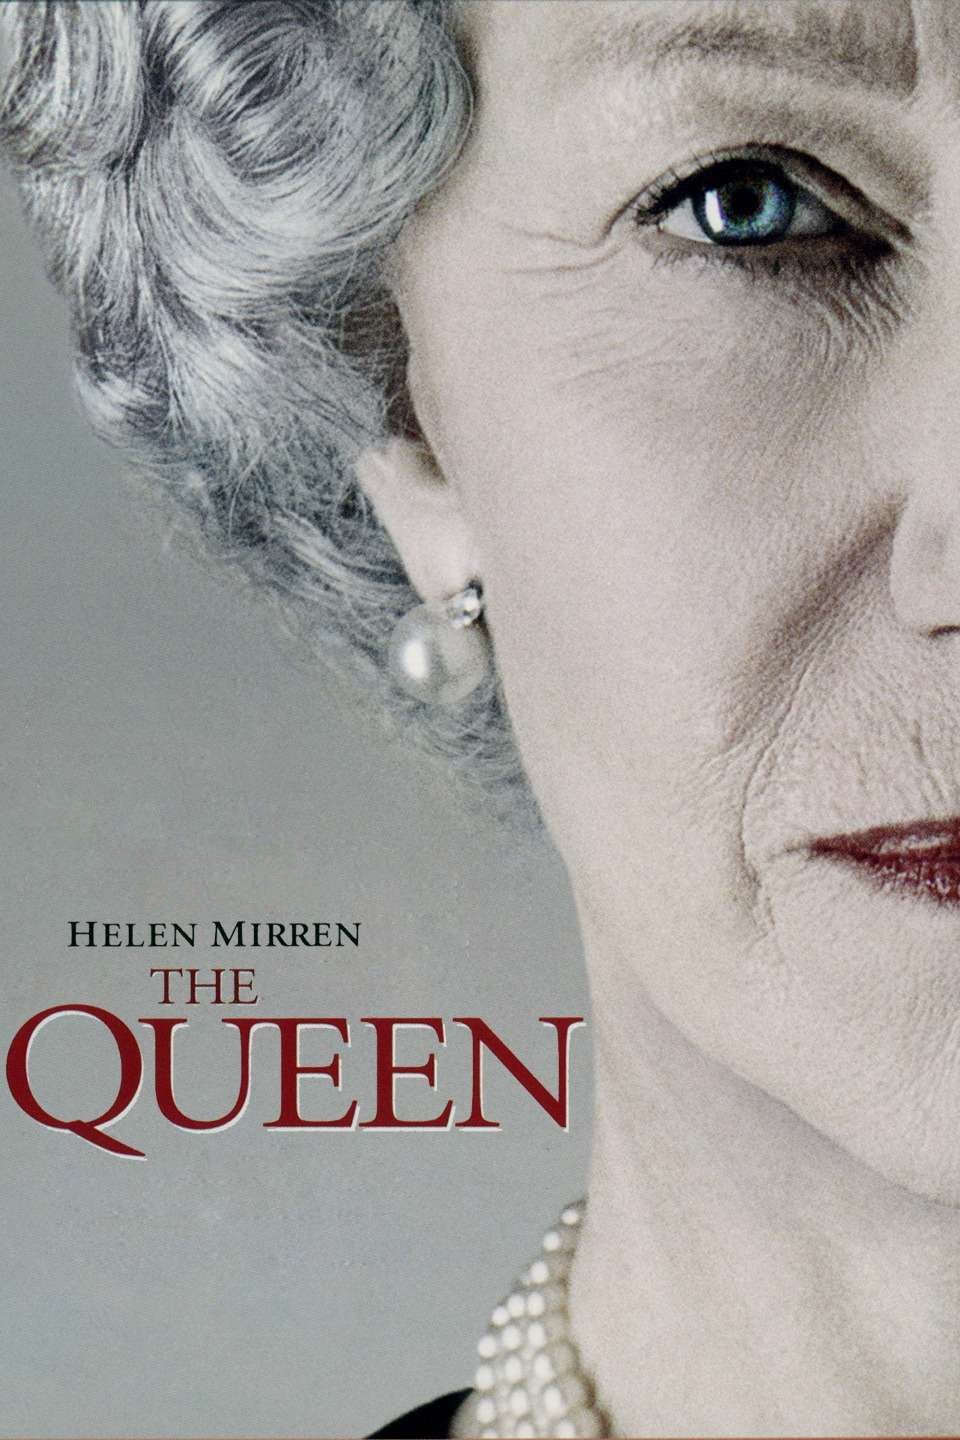 [MINI-HD] The Queen (2006) เดอะ ควีน ราชินีหัวใจโลกจารึก [1080p] [พากย์ไทย 5.1 + เสียงอังกฤษ 5.1] [บรรยายไทย + อังกฤษ] [เสียงไทย + ซับไทย] [PANDAFILE]